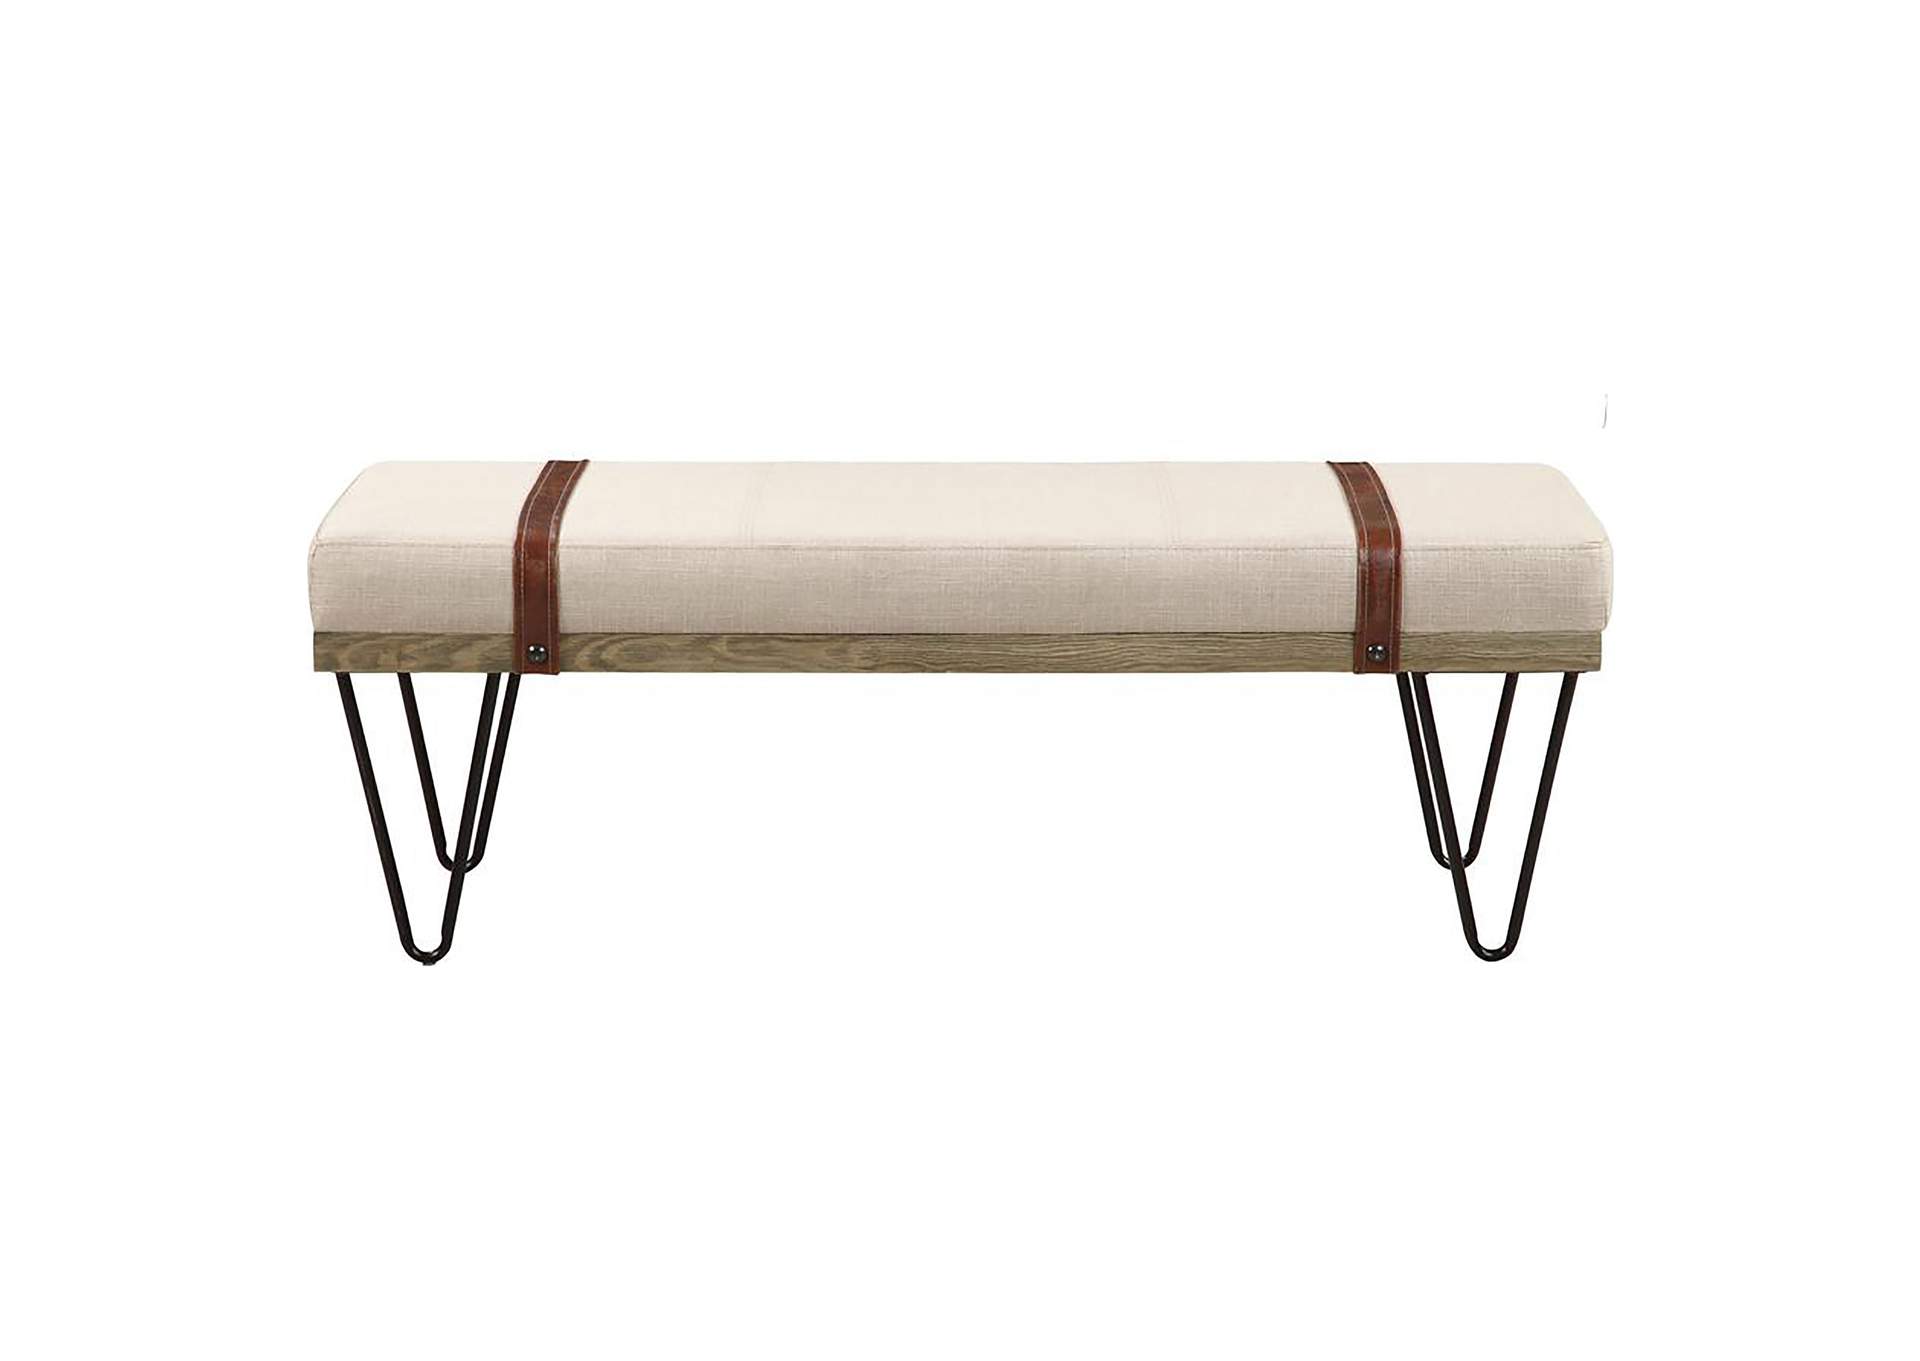 Austin Upholstered Bench Beige and Black,Coaster Furniture